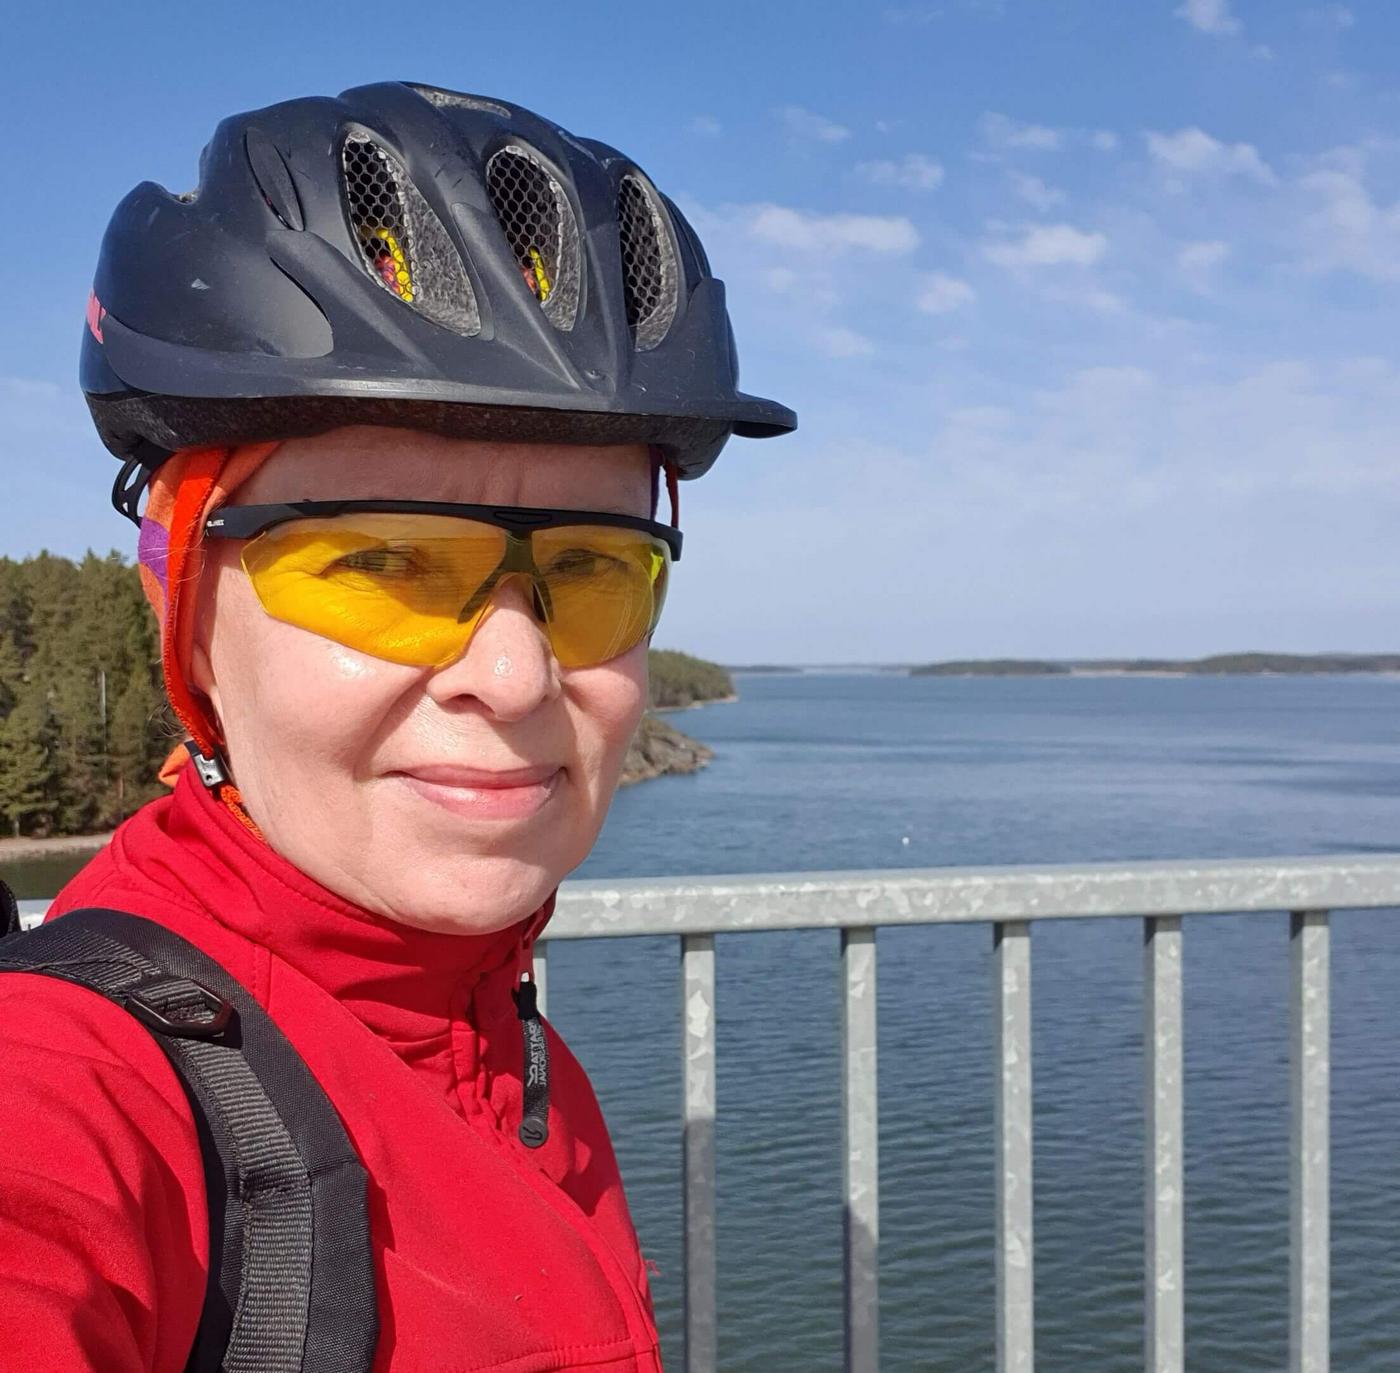 Kvinna i cykelhjälm och cykelglasögon på en hög bro.